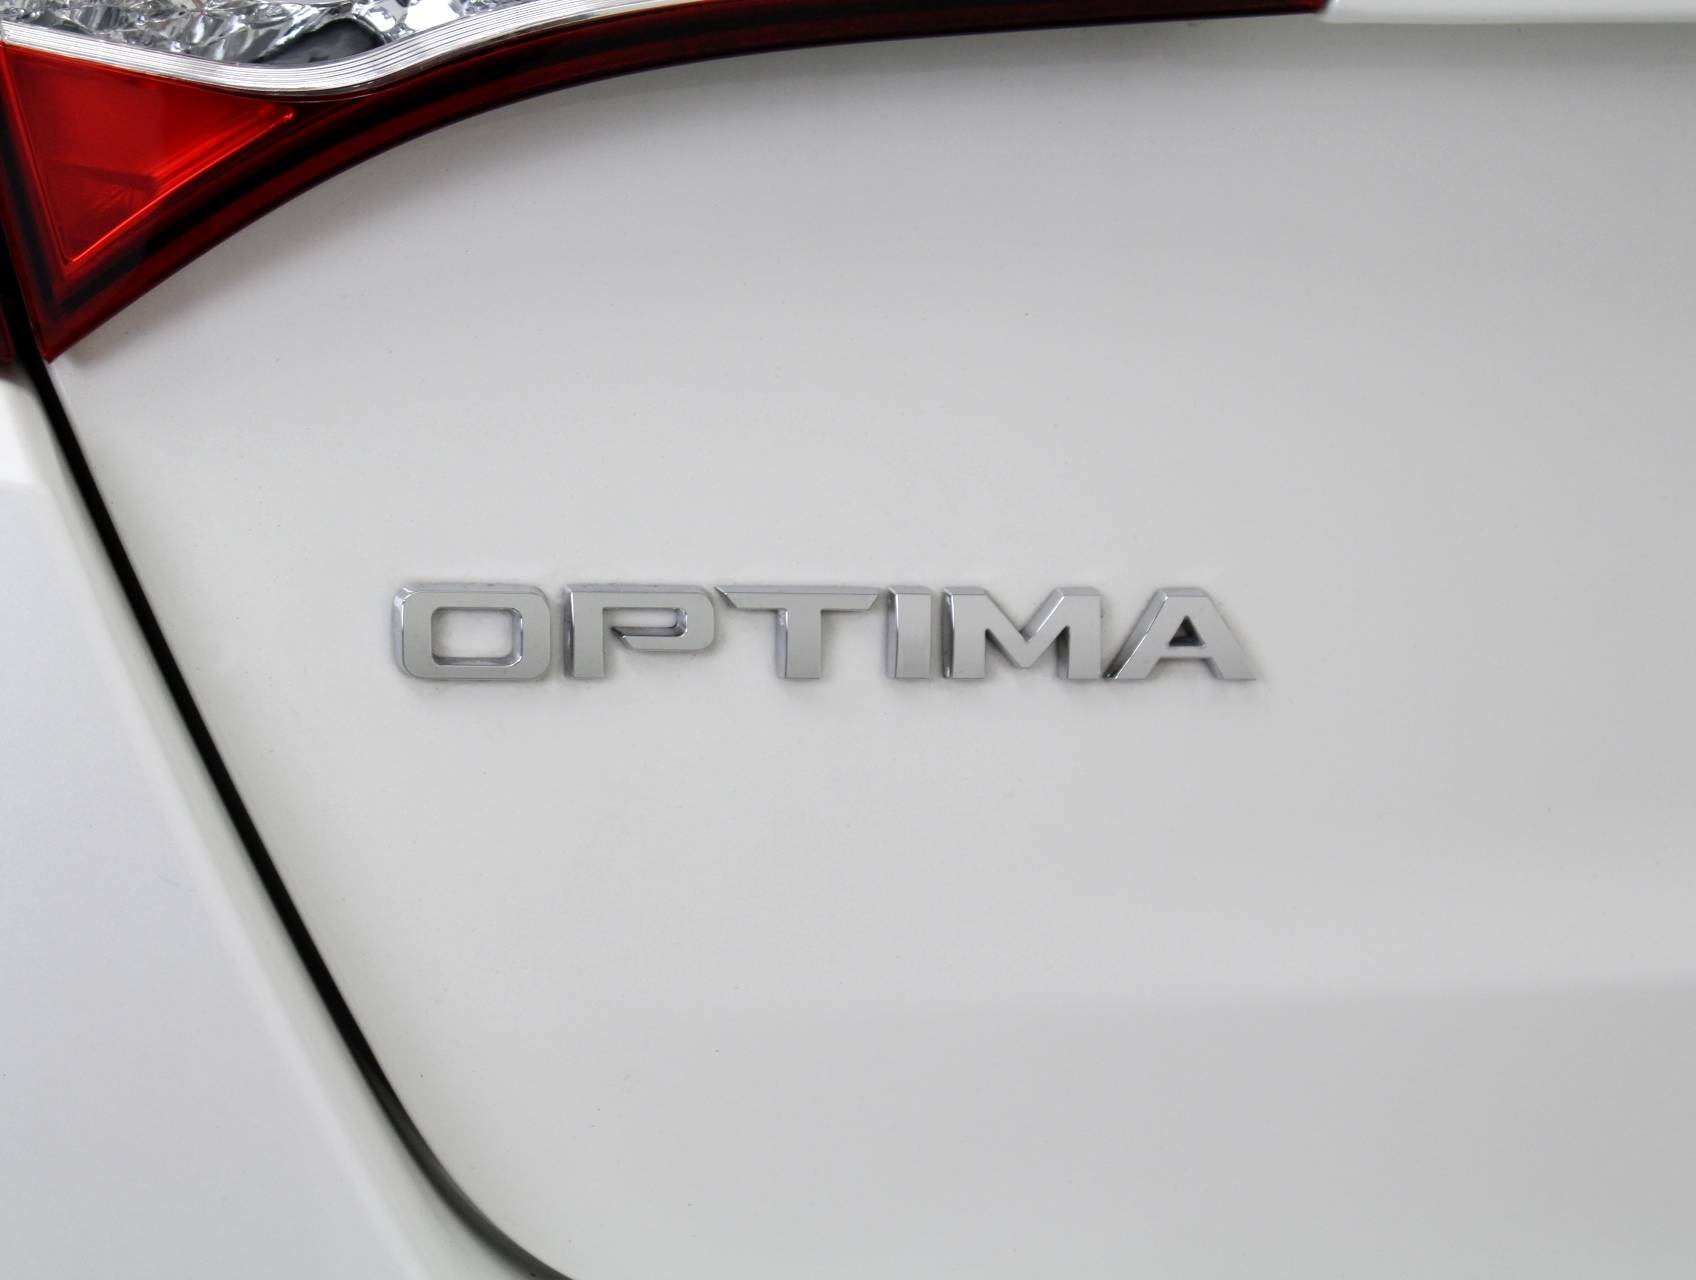 Florida Fine Cars - Used KIA OPTIMA 2013 MIAMI LX HYBRID